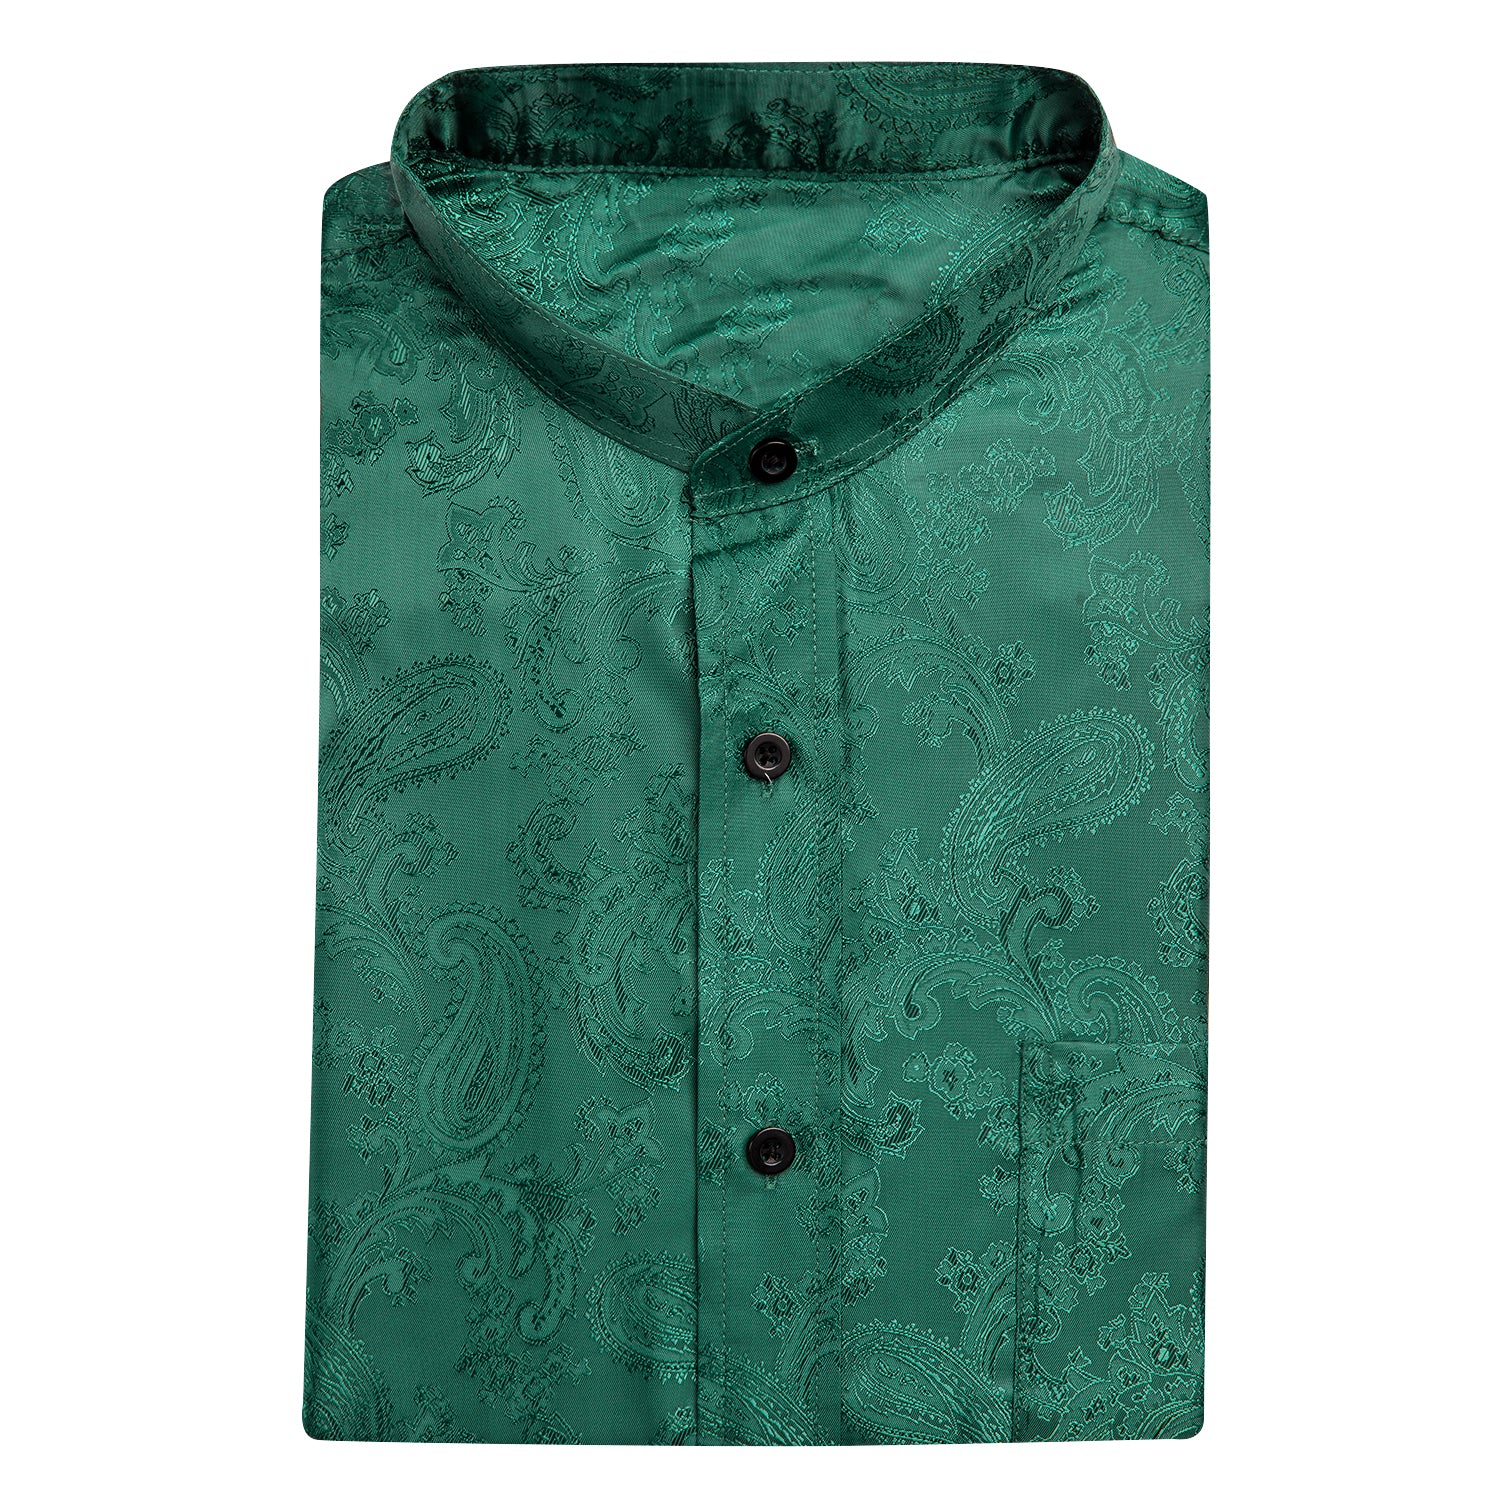 HITIE Emerald Green Paisley Silk Men's Short Sleeve Shirt